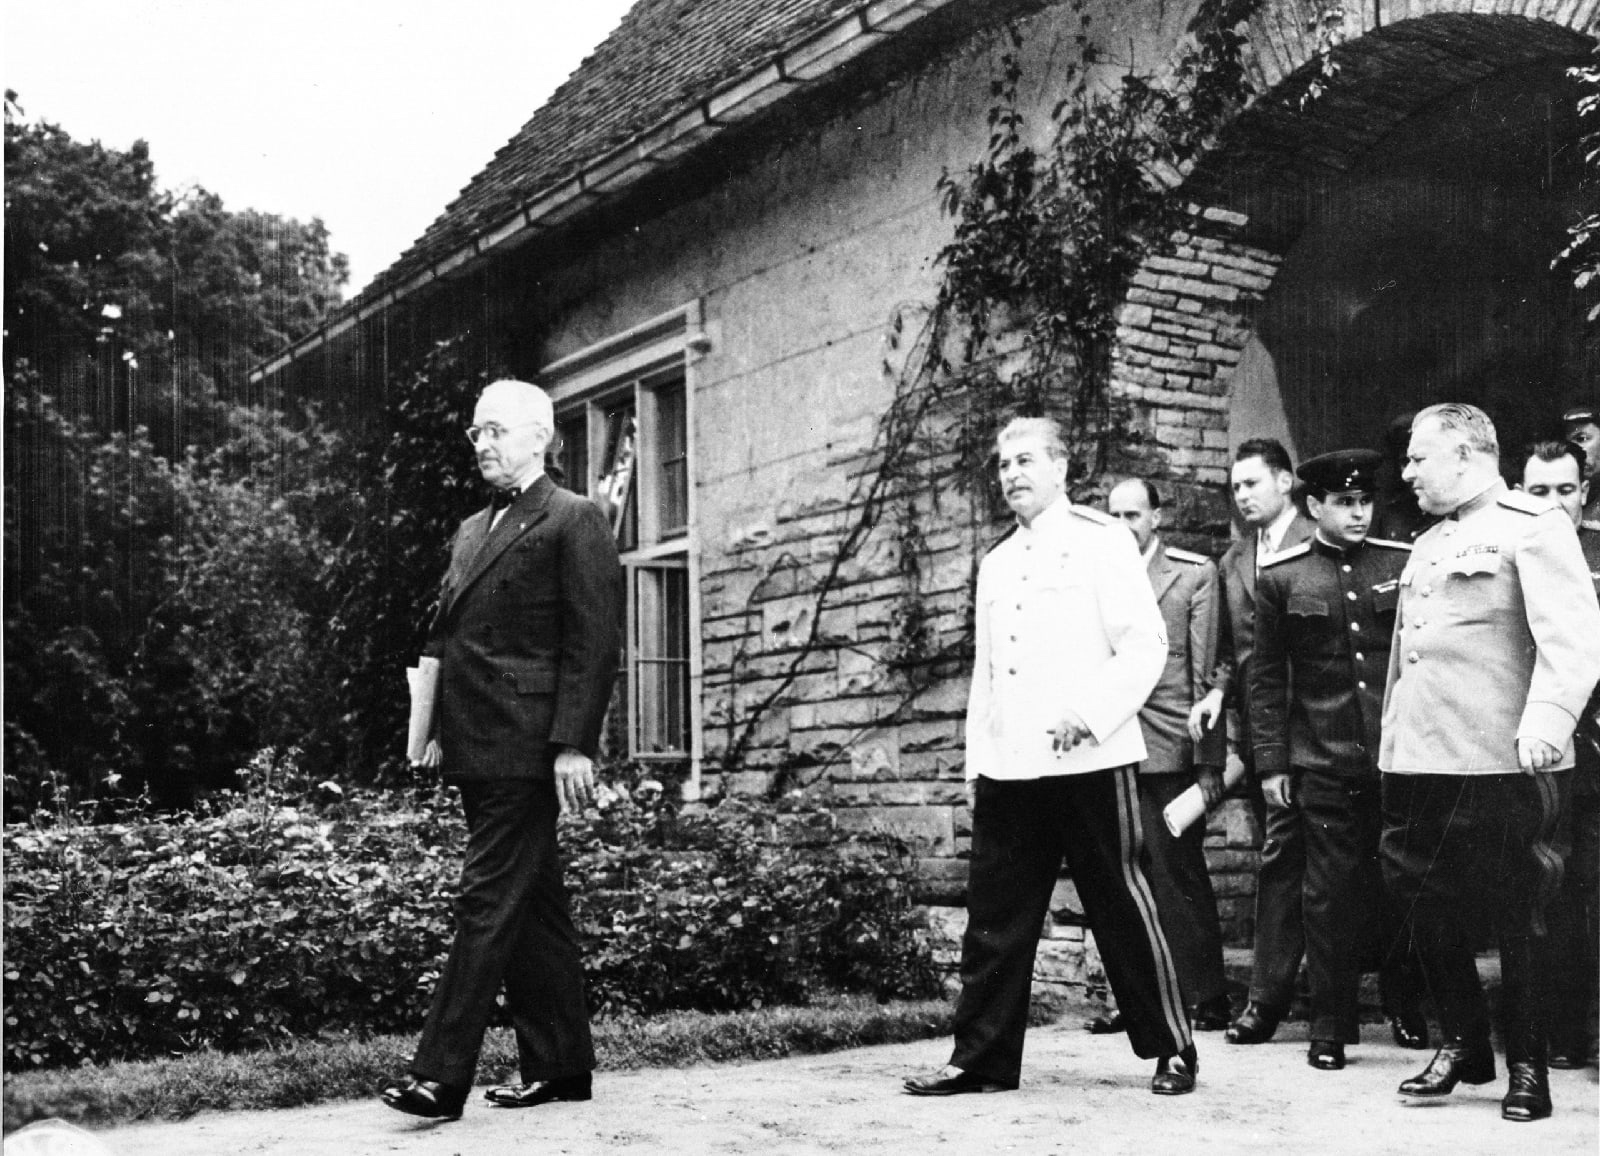 Иосиф Сталин на прогулке во дворце Цецилинхоф с президентом США Г. Трумэном во время Потсдамской конференции. Справа — Николай Власик. 1 августа 1945 года